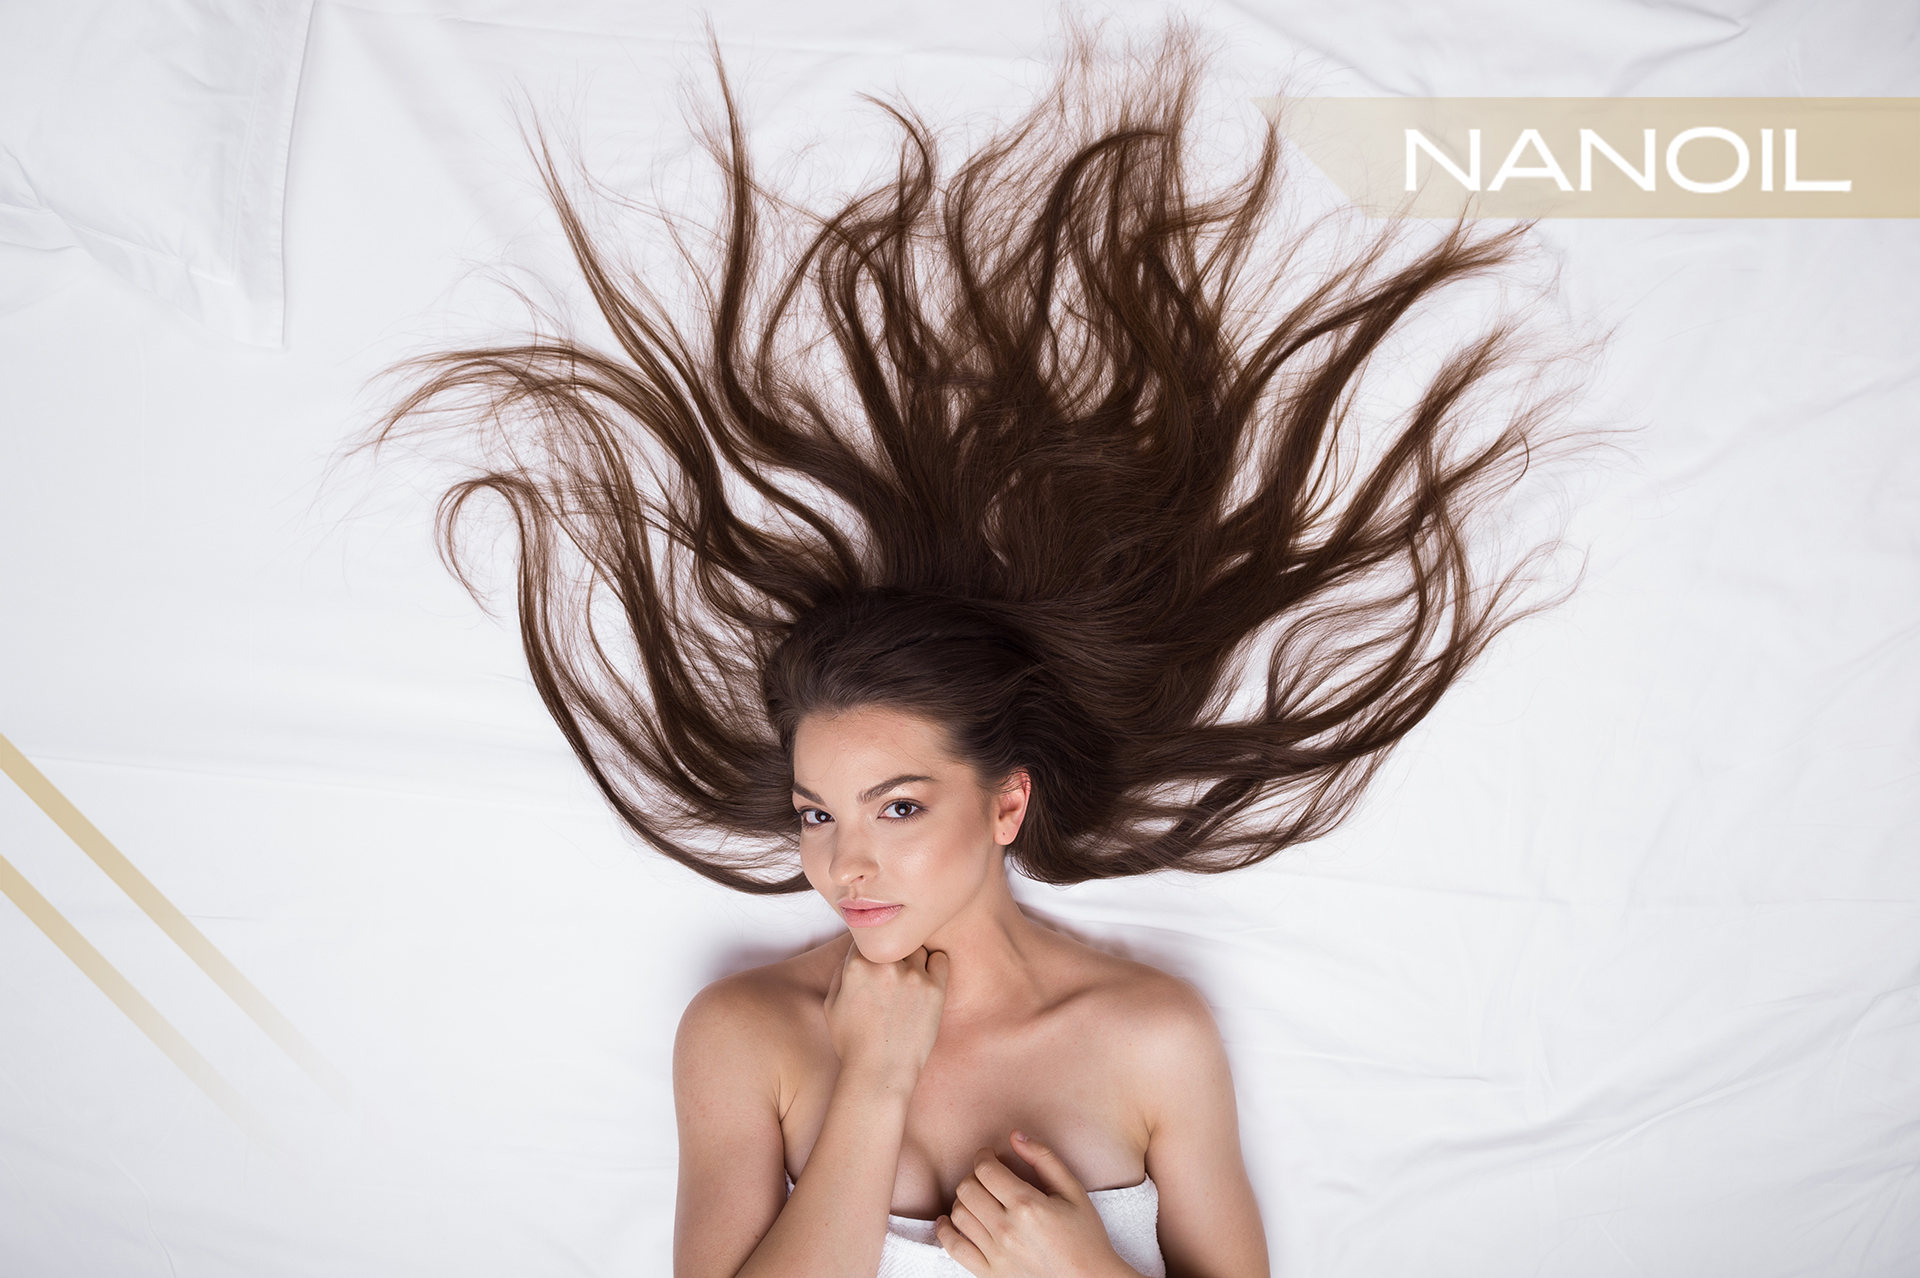 Wie sollten Haaröle Nanoil angewendet werden?